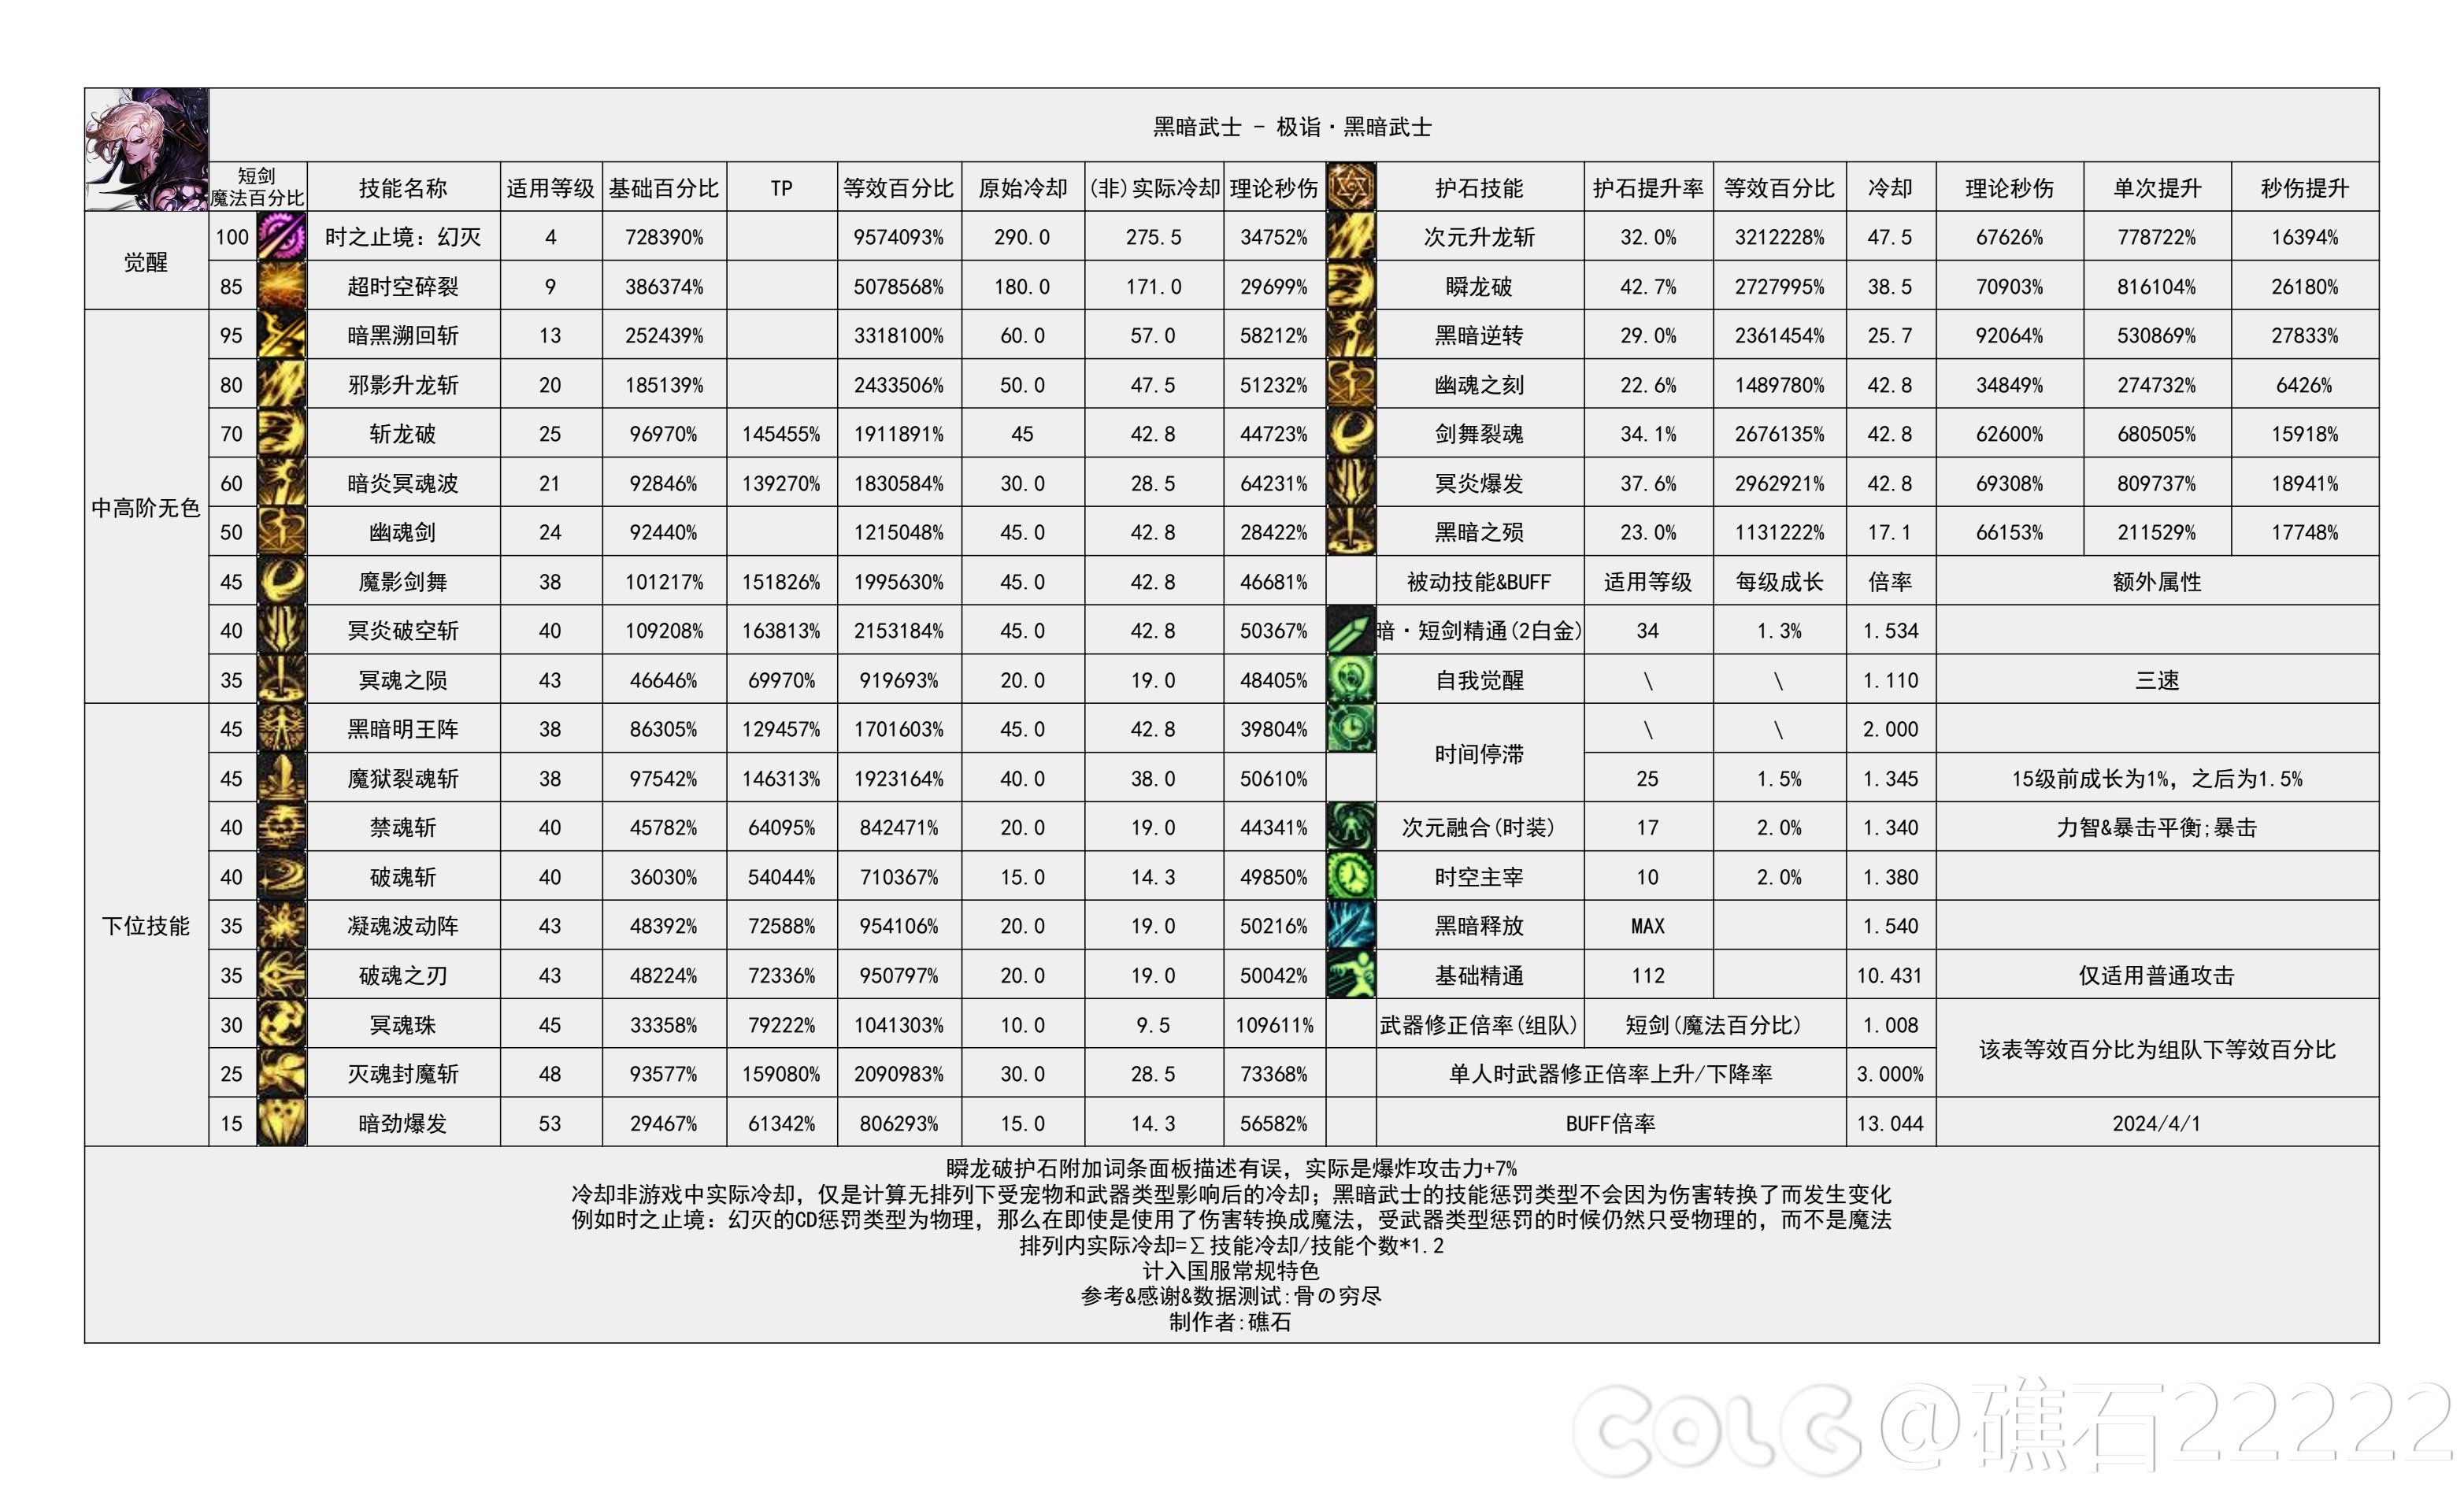 【国服现状】110版本输出职业数据表(国正5.15)(最新)80